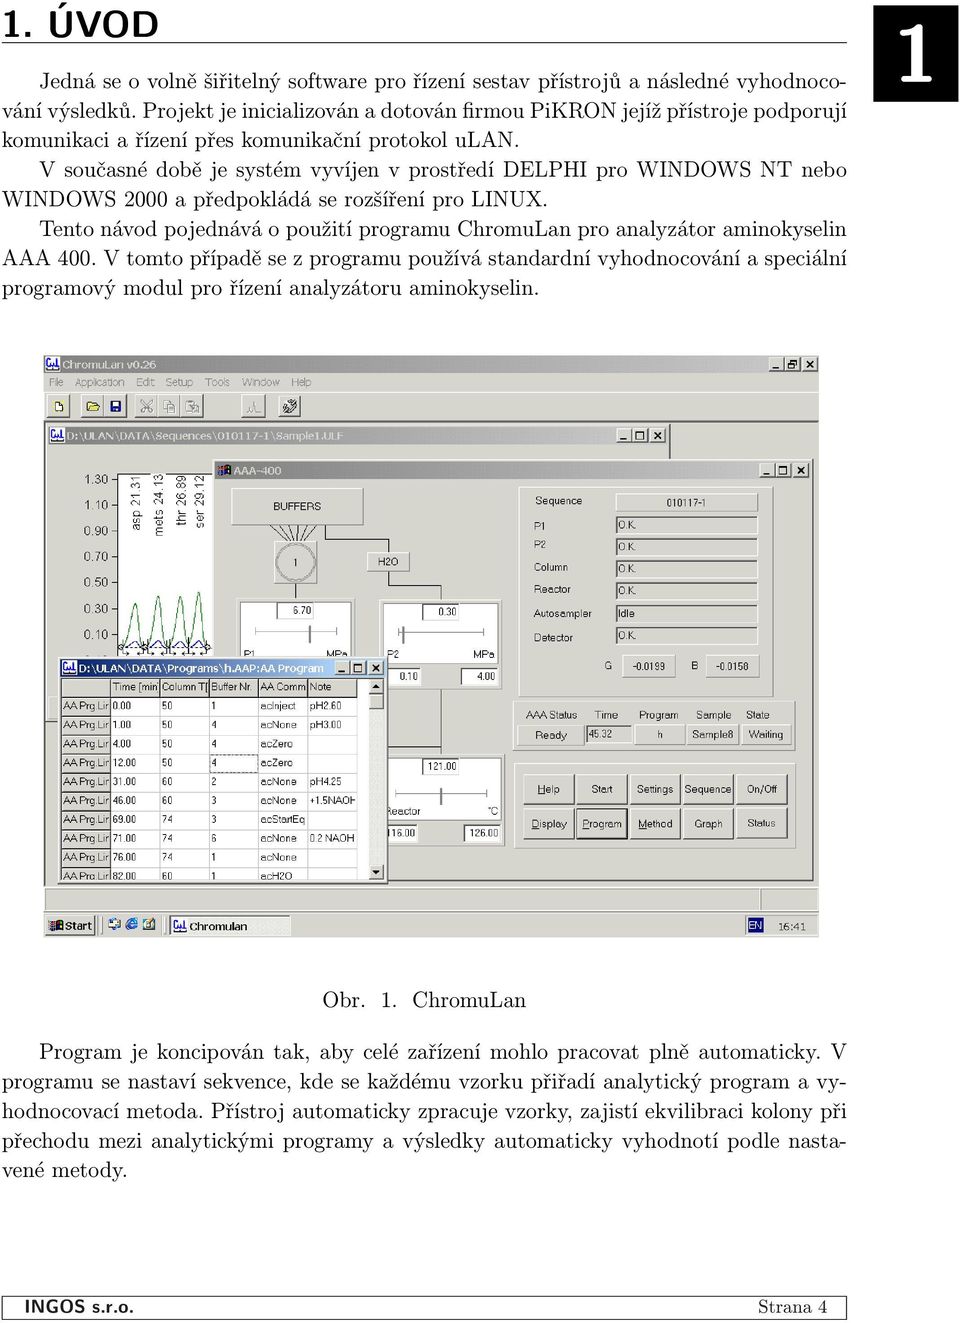 V současné době je systém vyvíjen v prostředí DELPHI pro WINDOWS NT nebo WINDOWS 2000 a předpokládá se rozšíření pro LINUX.